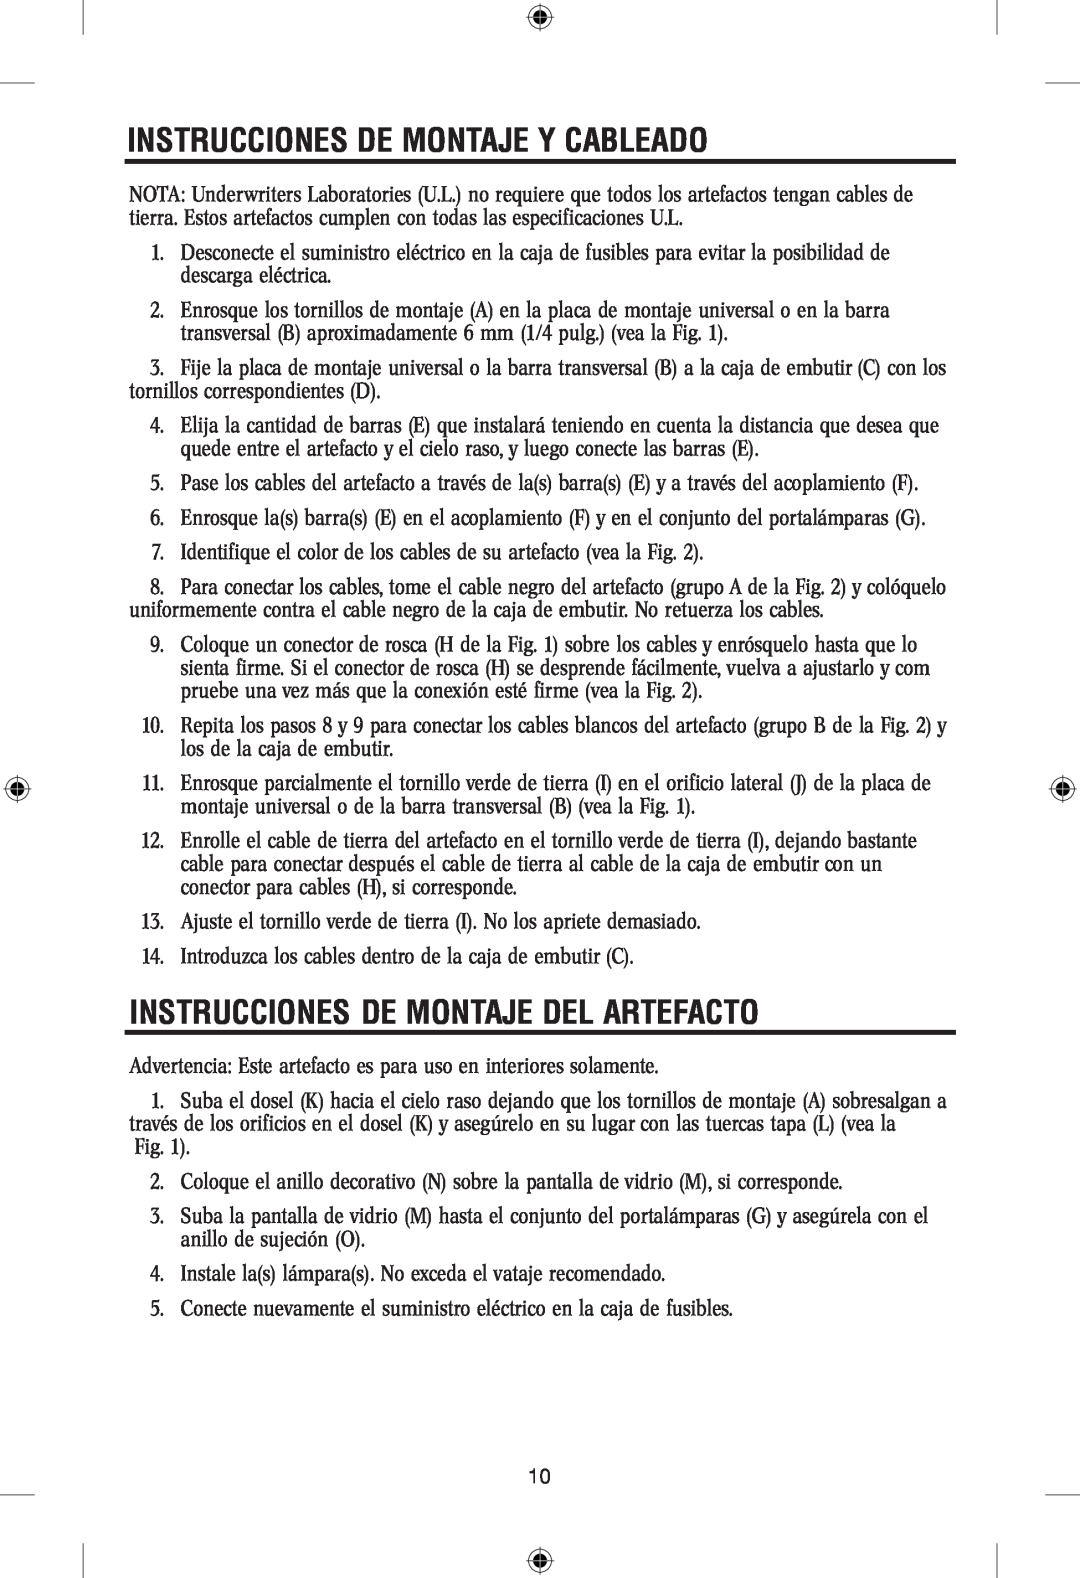 Westinghouse 101304 owner manual Instrucciones De Montaje Y Cableado, Instrucciones De Montaje Del Artefacto 